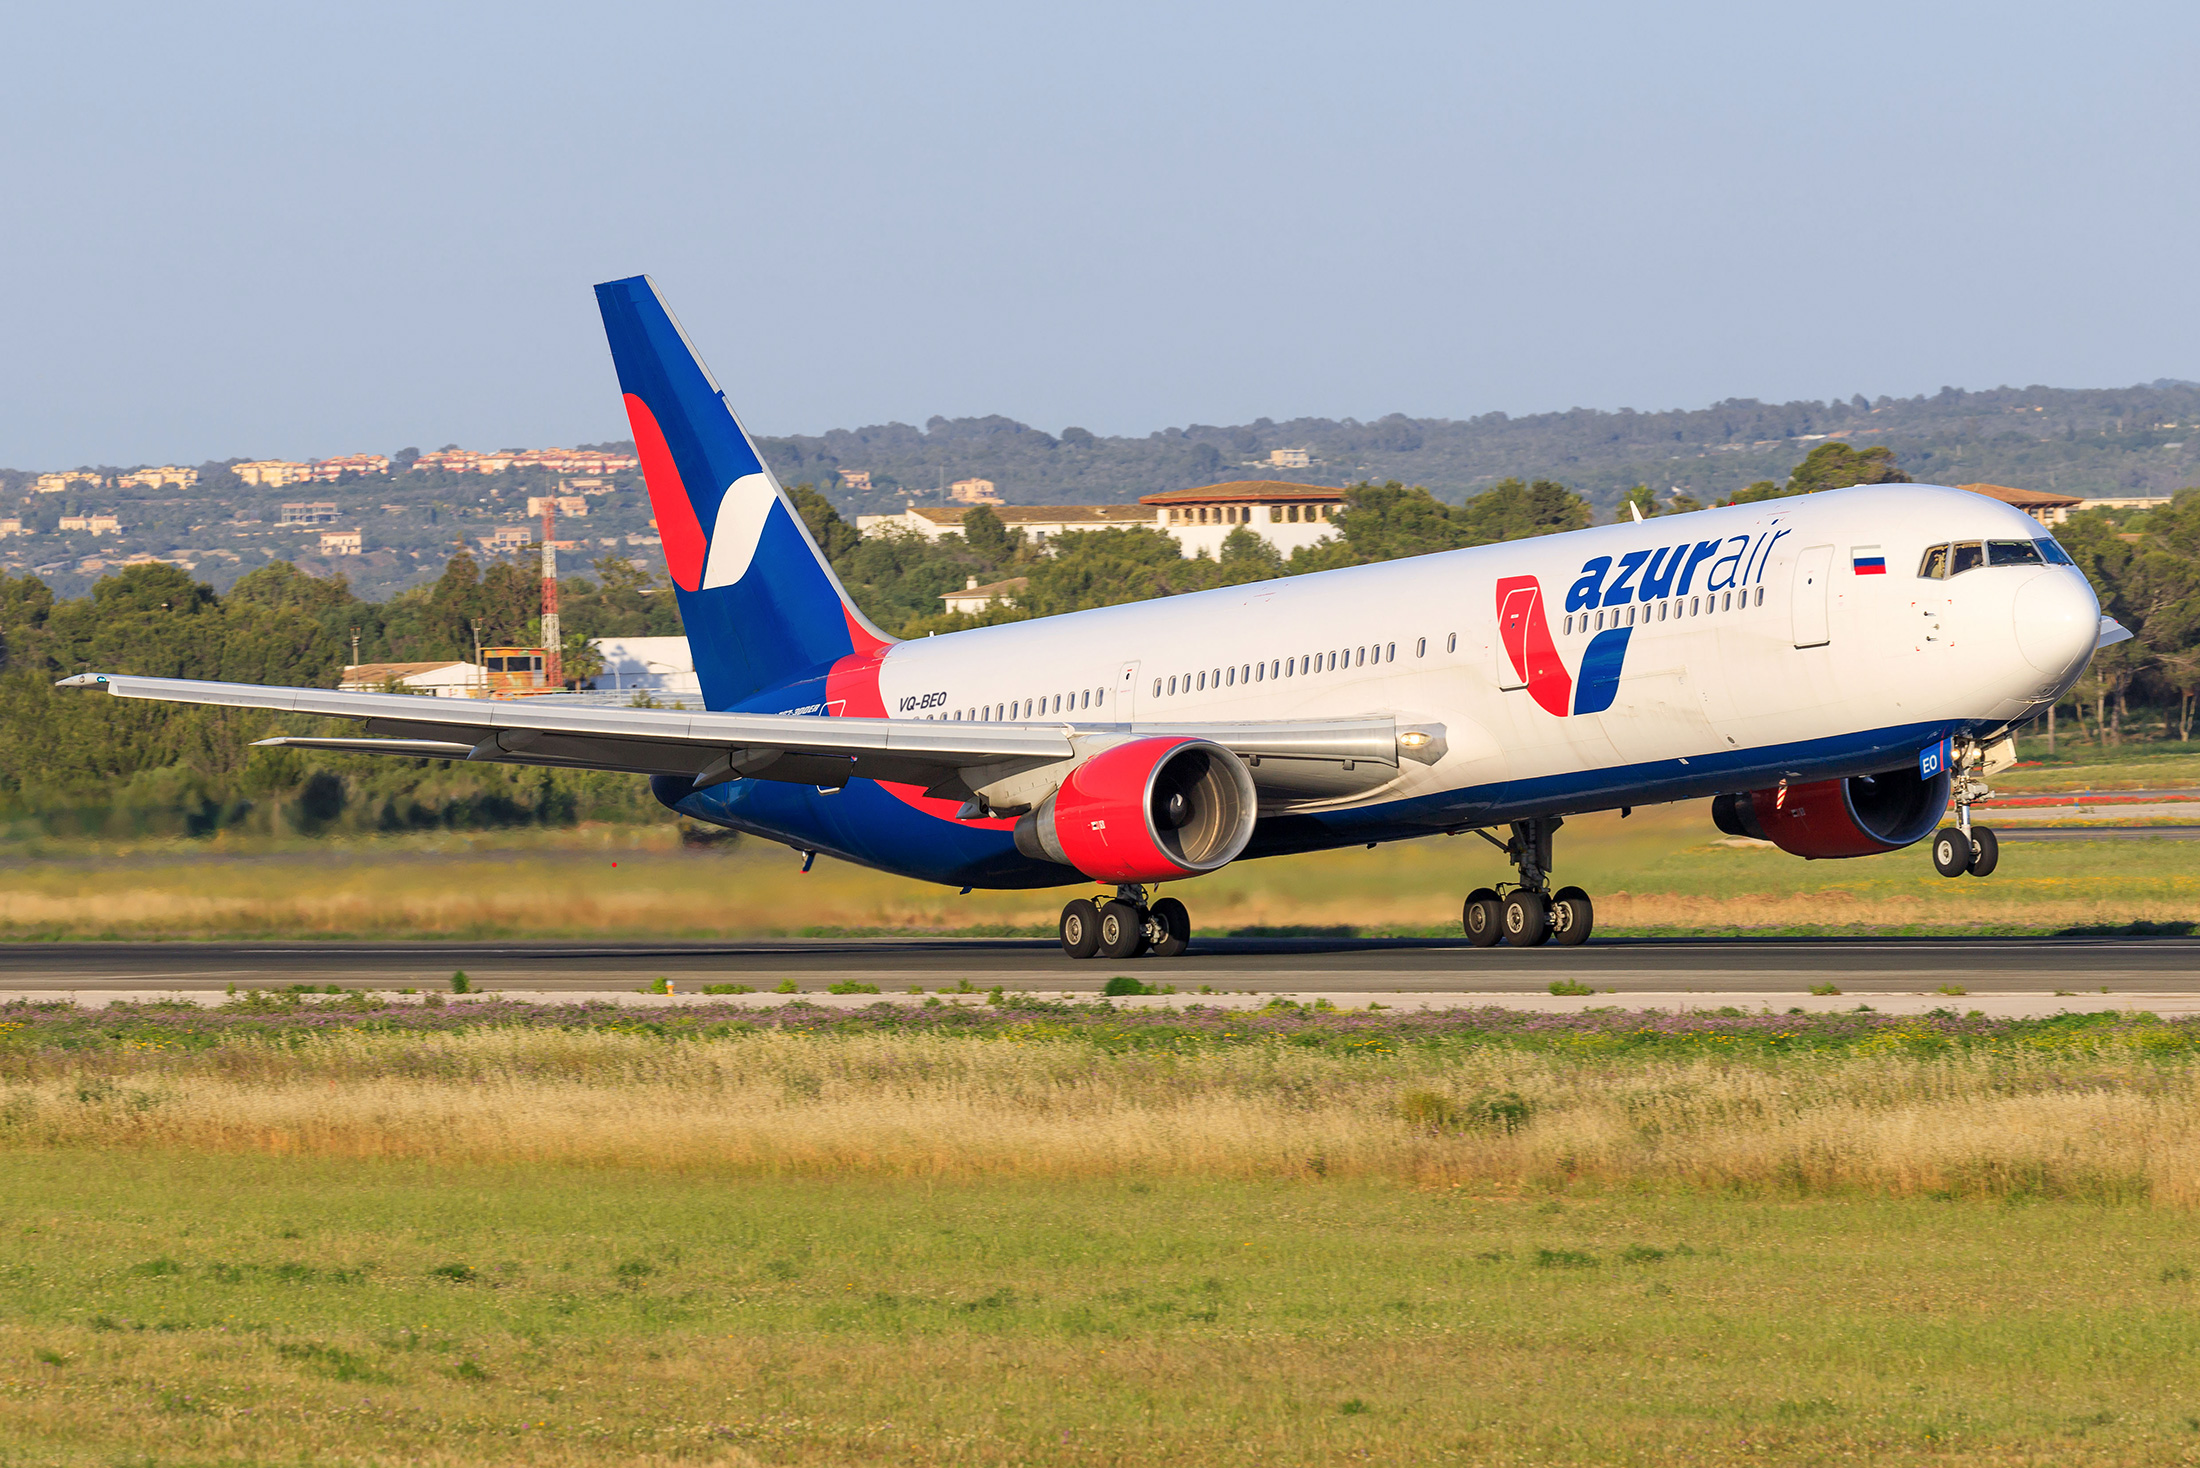 AZUR air, Новости, 04 июня 2019, AZUR air получила одиннадцатый Boeing 767-300 в своём парке